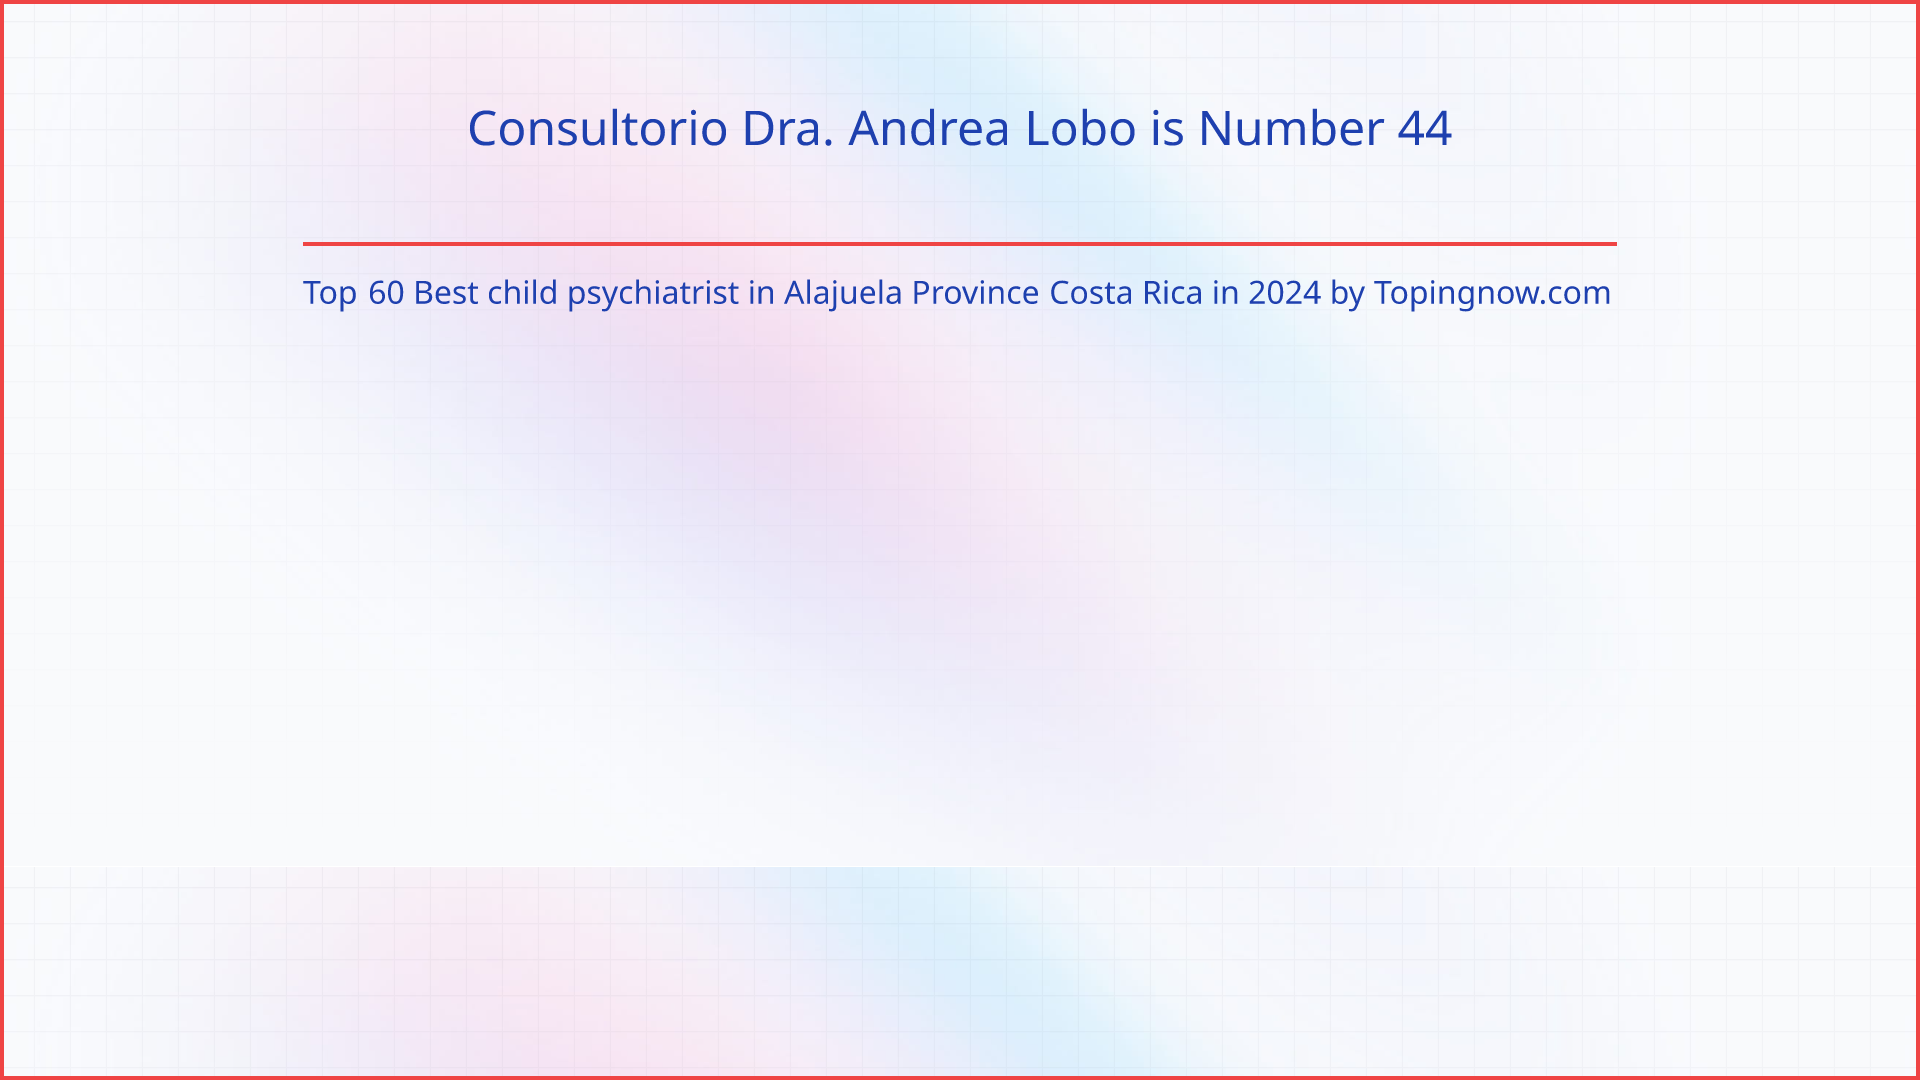 Consultorio Dra. Andrea Lobo: Top 60 Best child psychiatrist in Alajuela Province Costa Rica in 2024